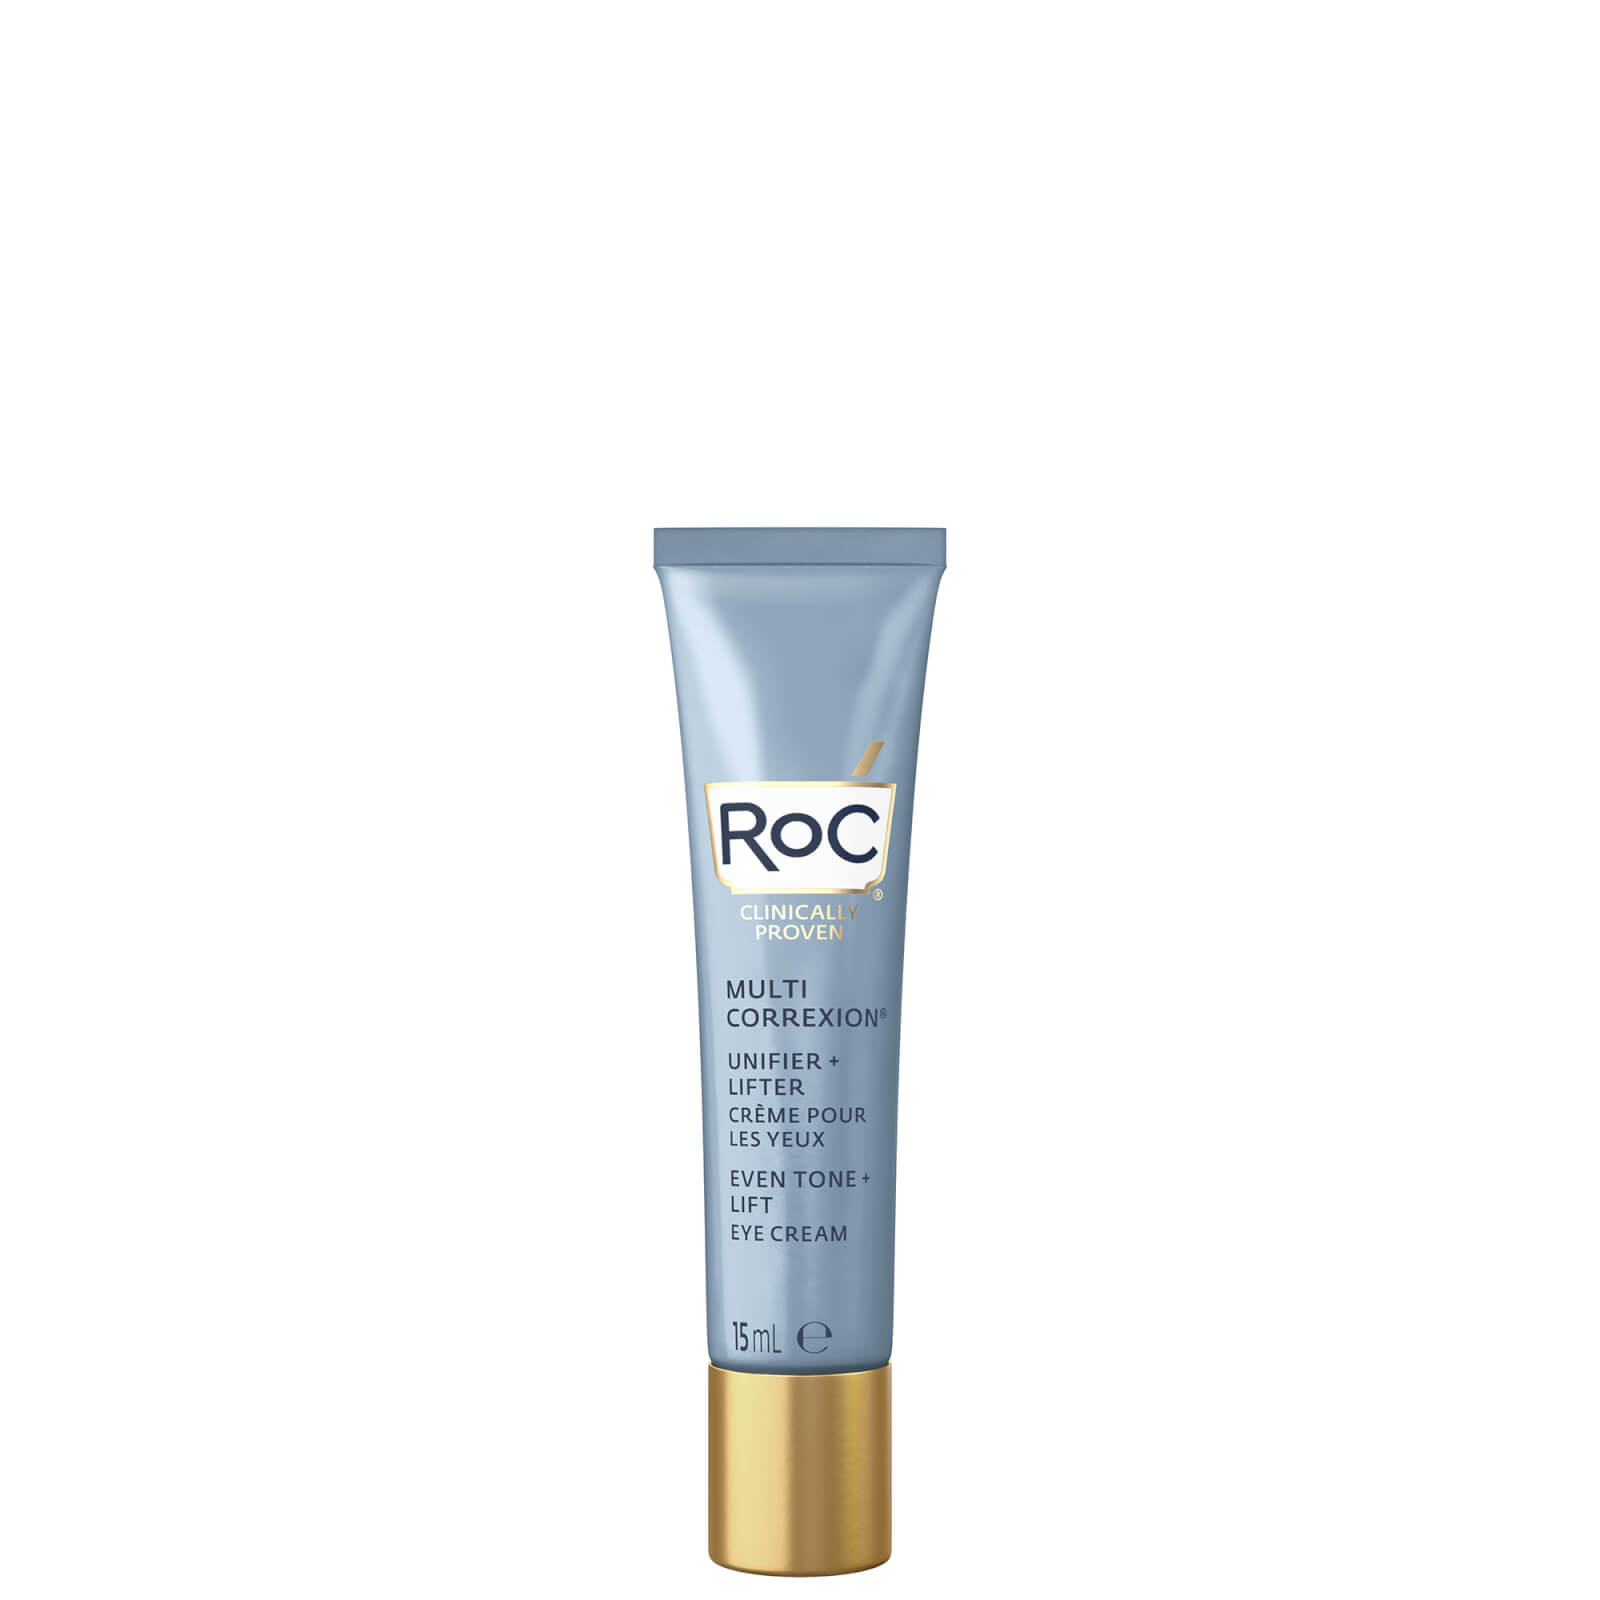 RoC Multi Correxion Even Tone + Lift Eye Cream 15ml